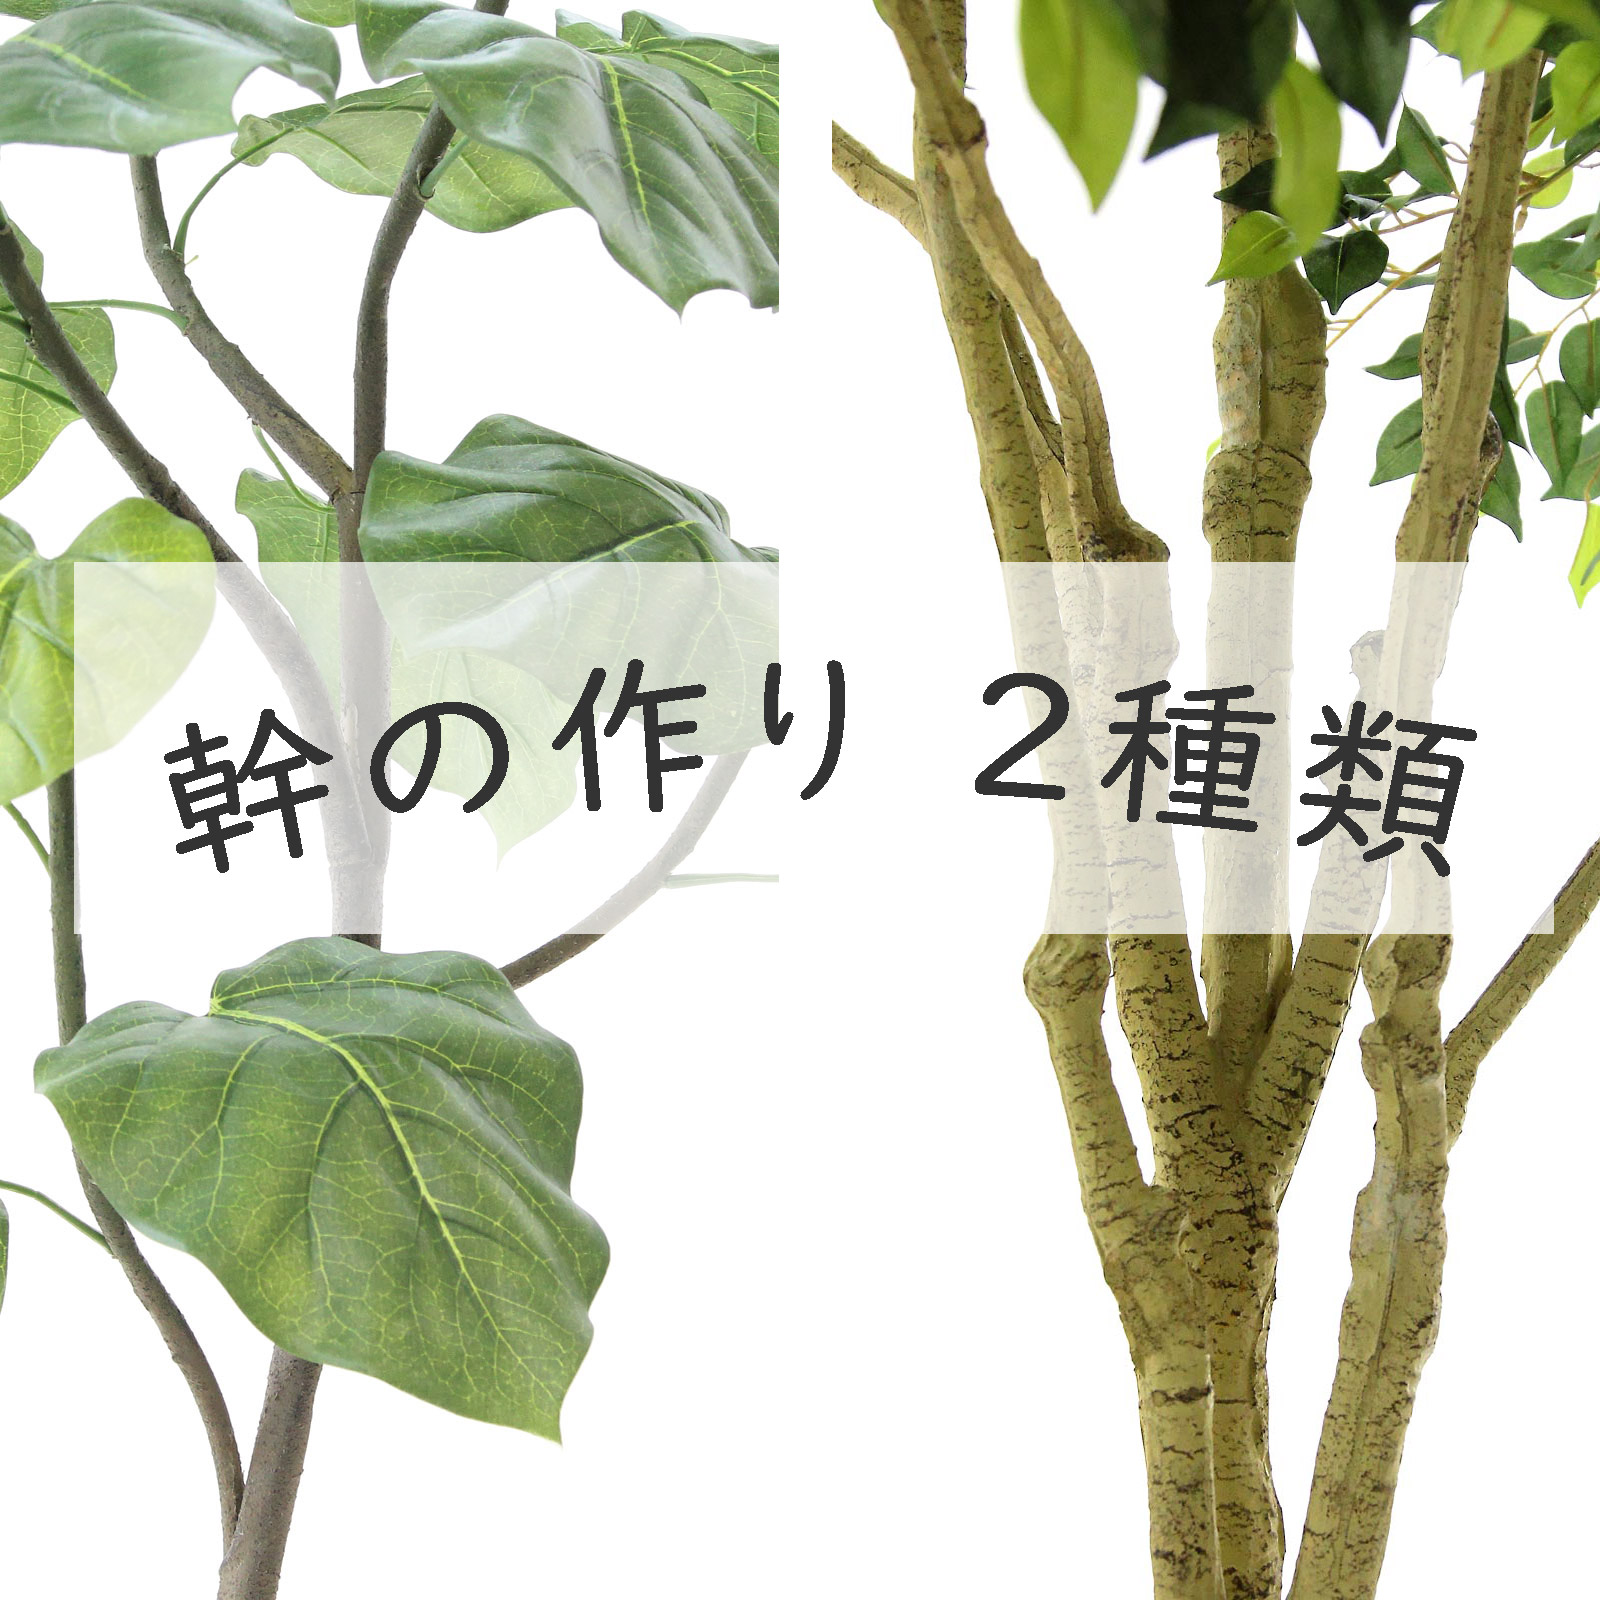 幹長130cm（鉢高除く）【新芽旺盛•太木】オリーブ